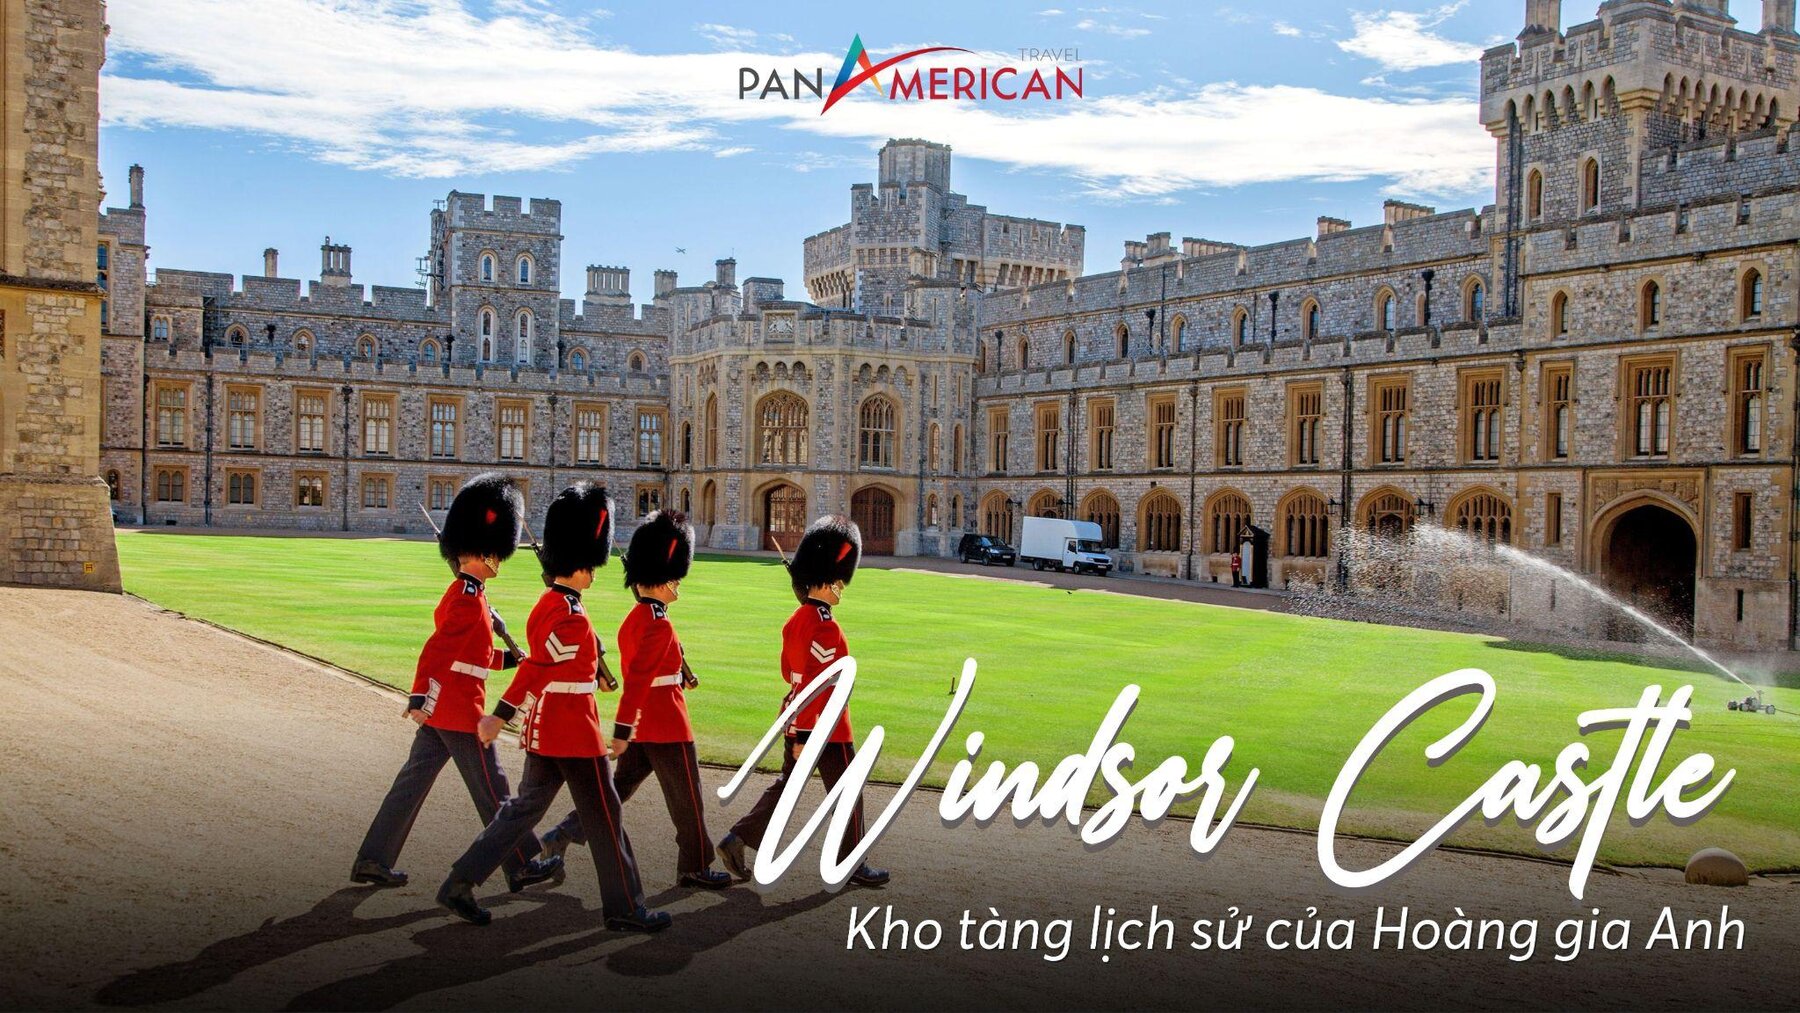 Lâu đài Windsor - Kho tàng lịch sử của Hoàng gia Anh 